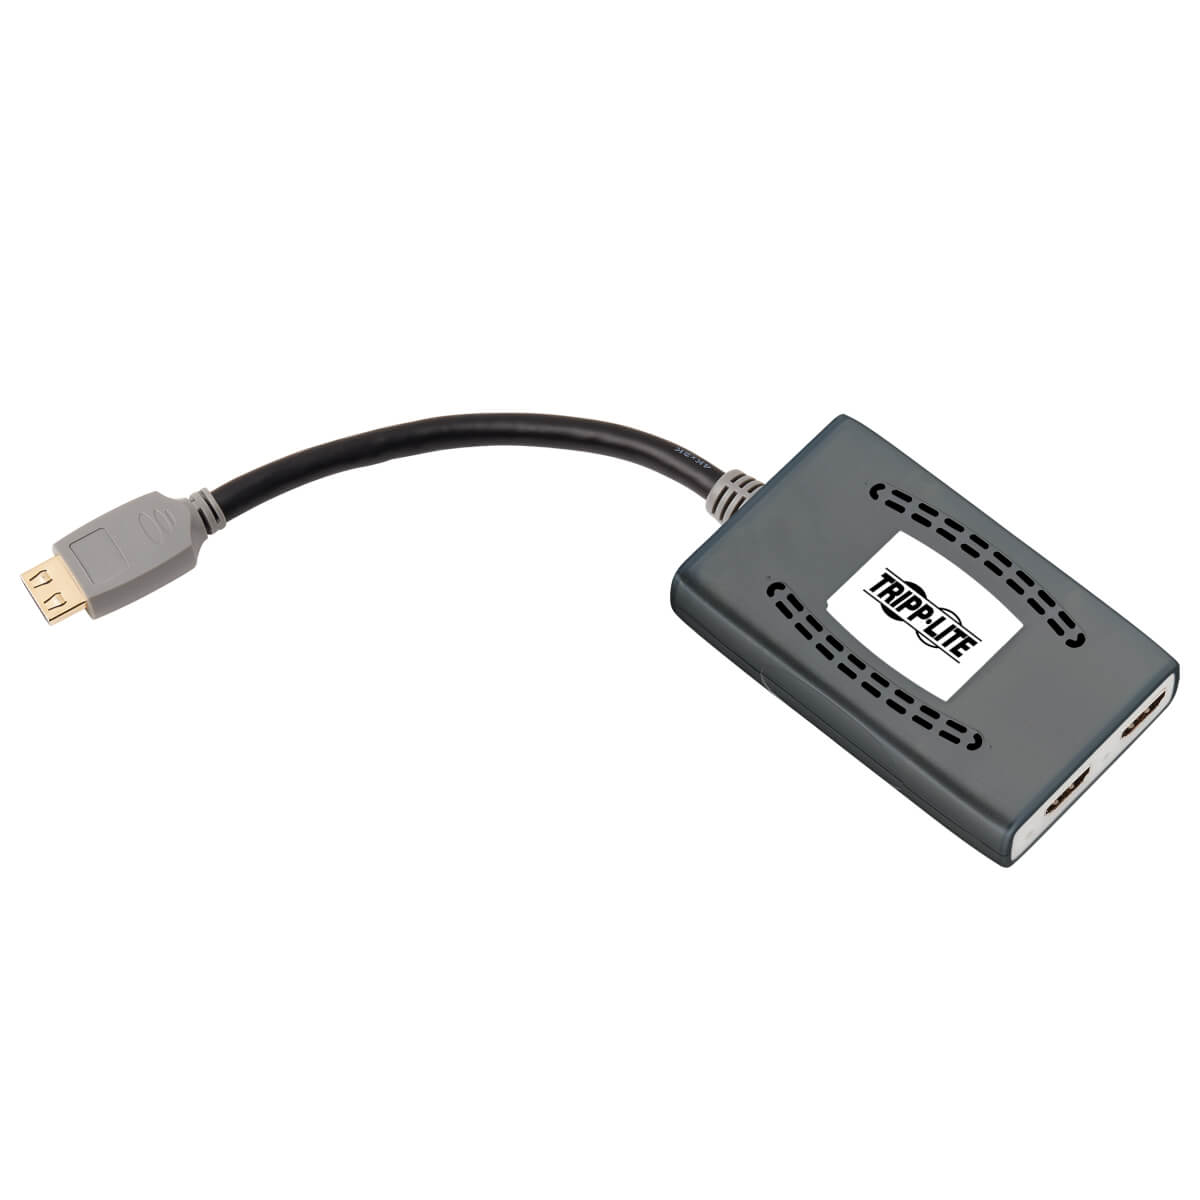 Tripp Lite B118-002-HDR-V2 2-Port HDMI Splitter - 4K @ 60 Hz, 4:4